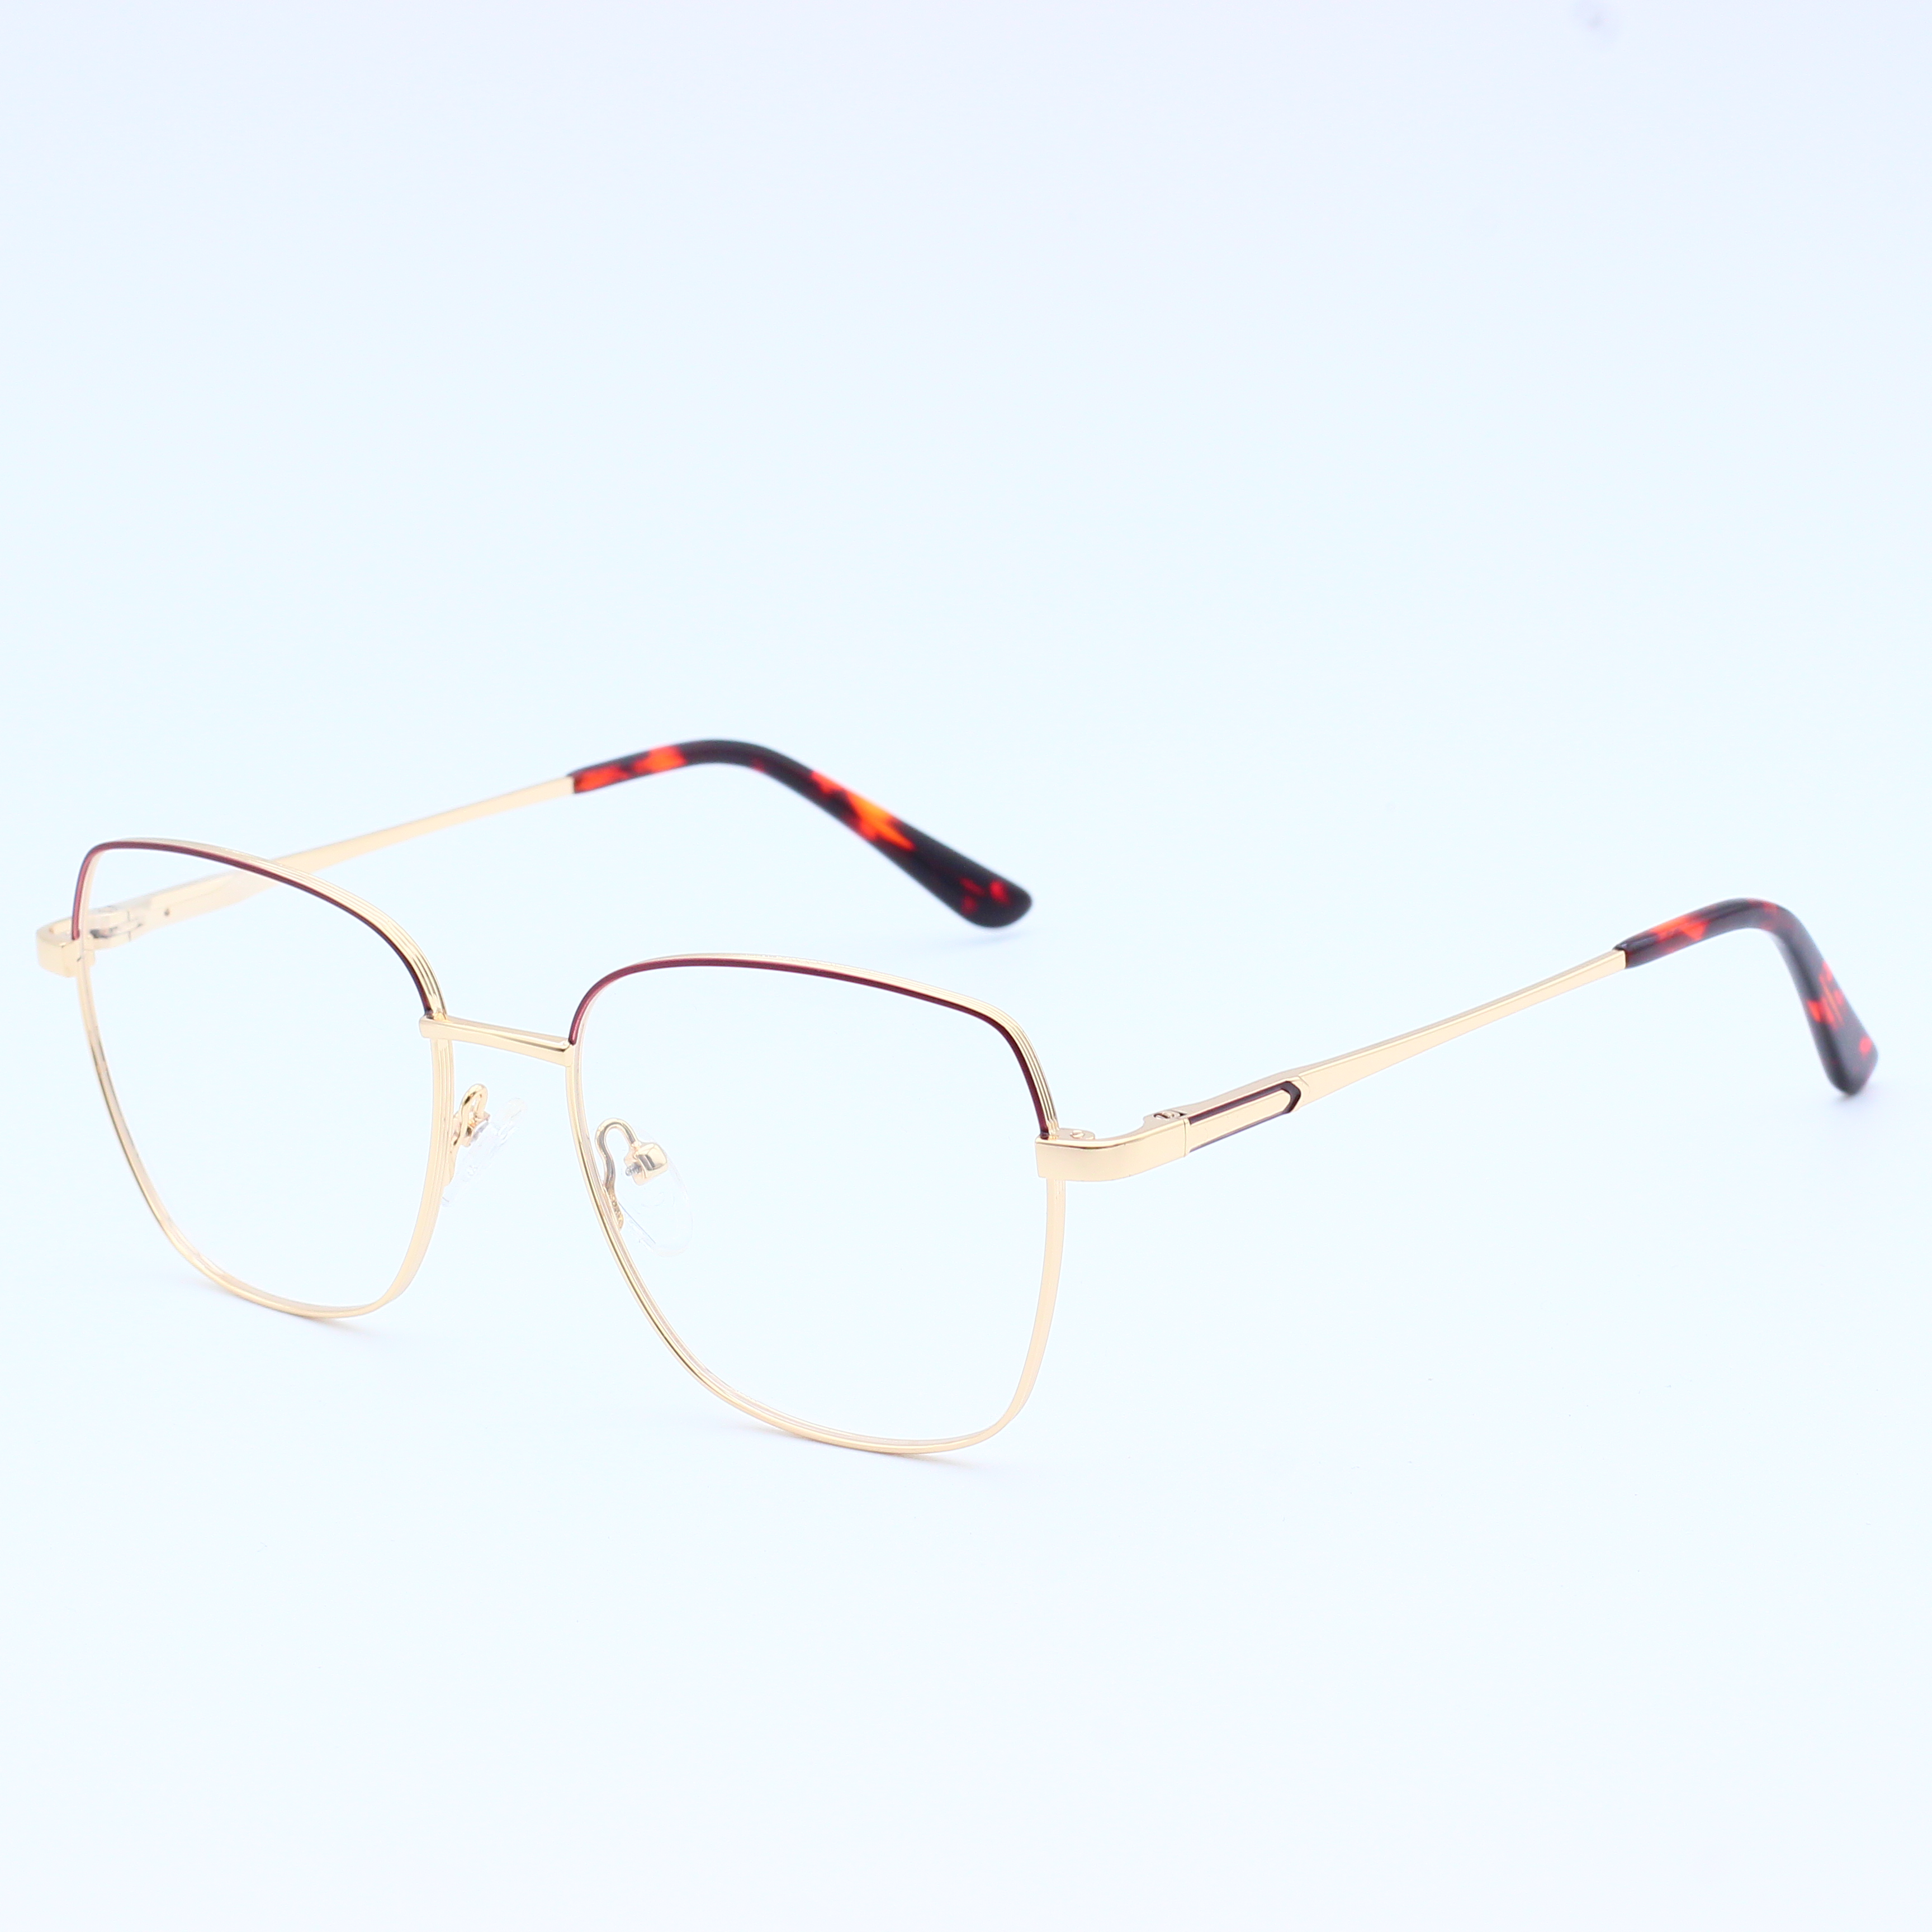 Best selling combine metal eyeglasses frames (10)